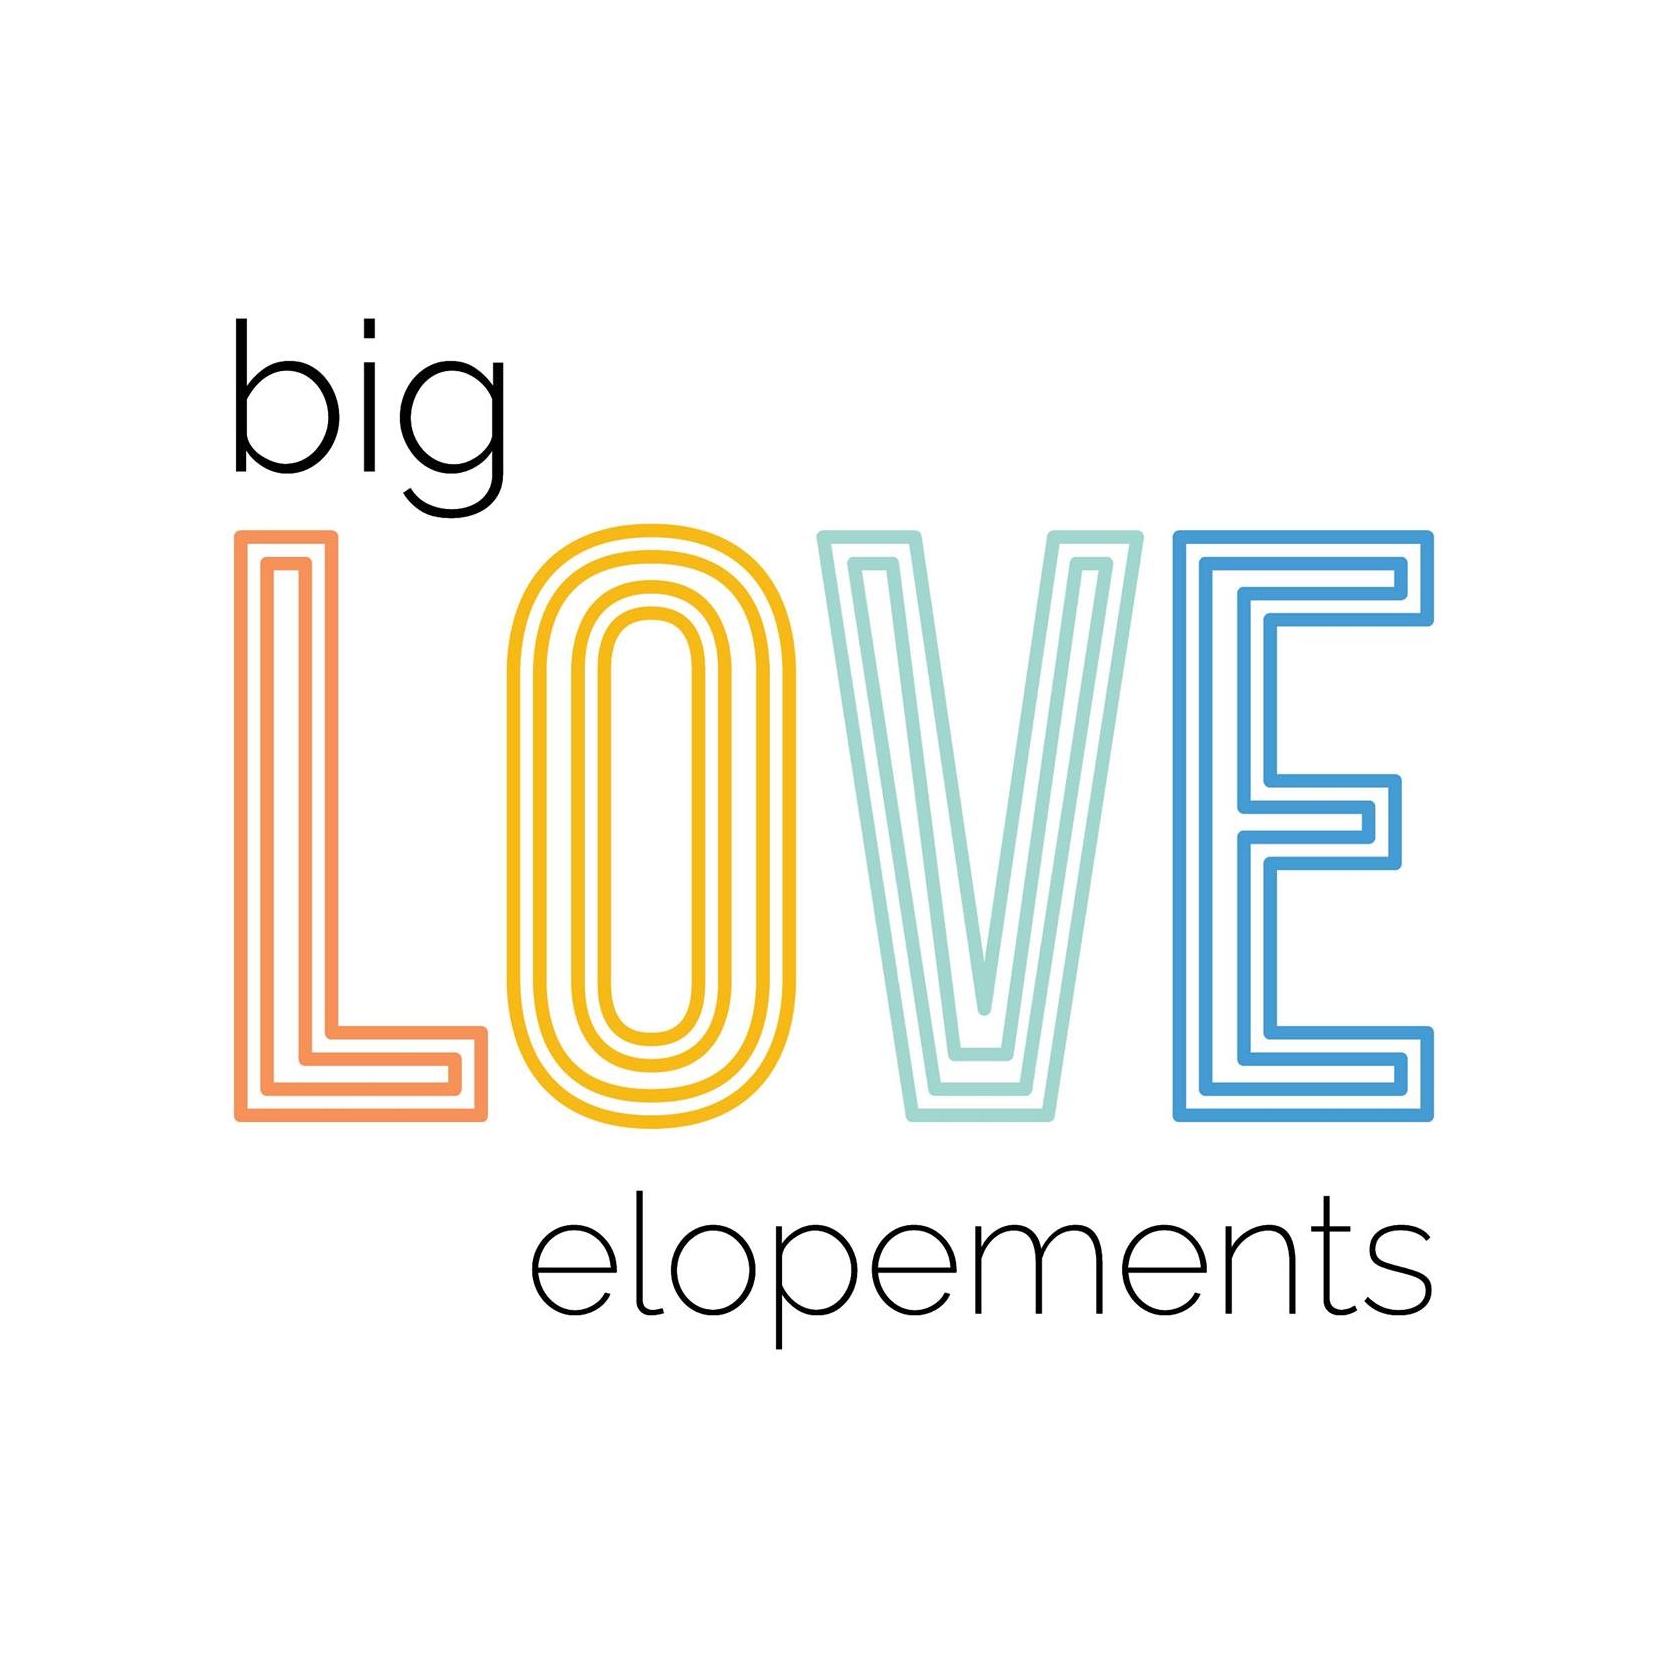 Big Love Elopements